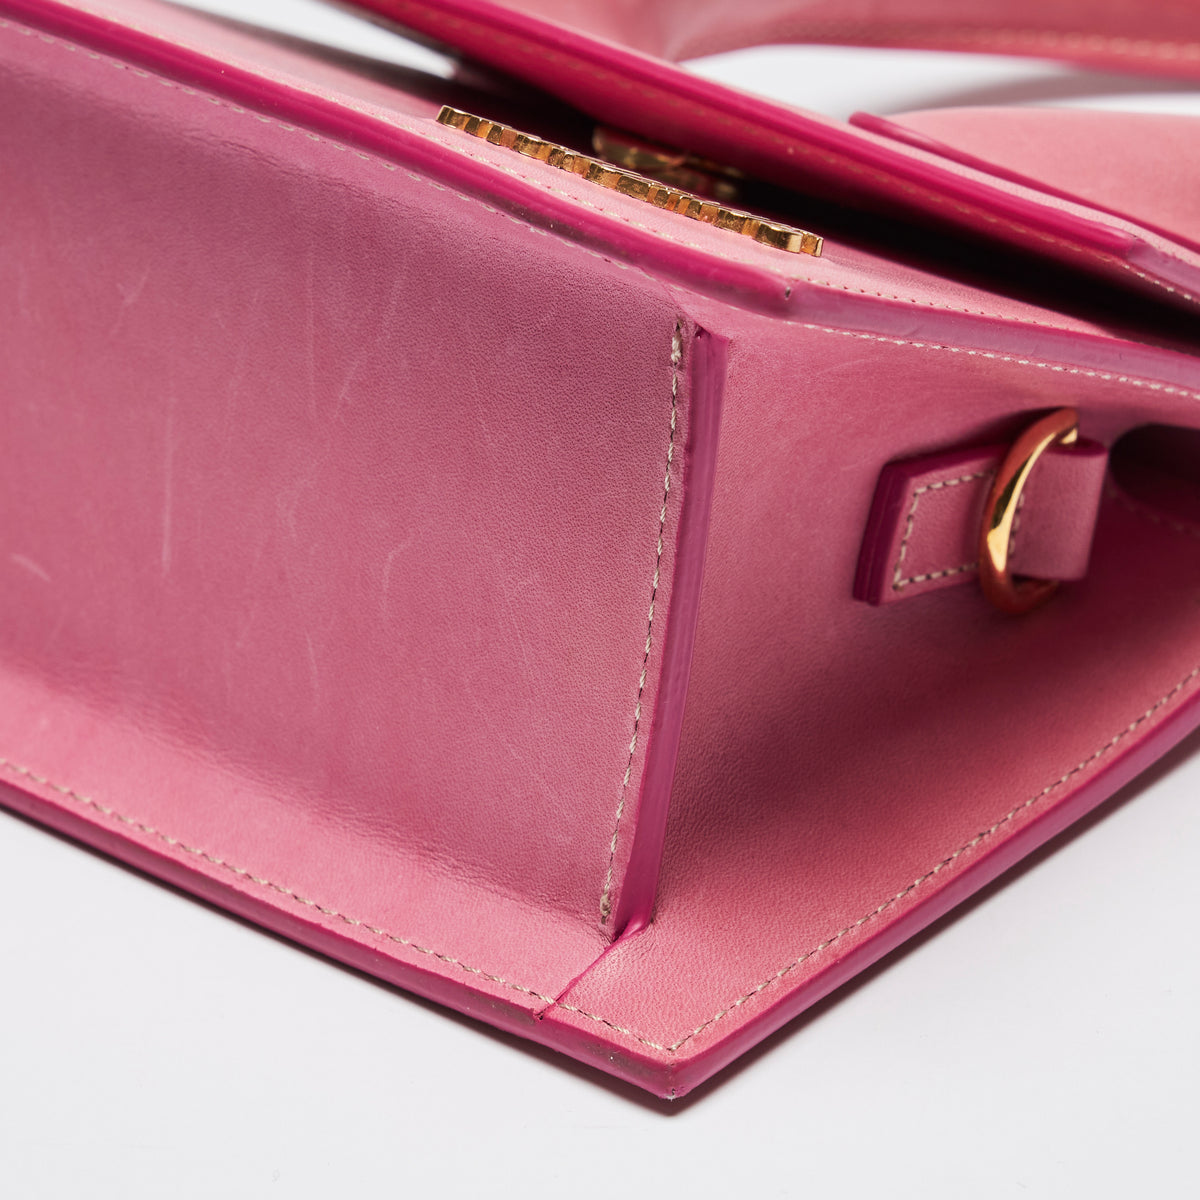 Pre-Loved Pink Leather Single Top Handle Mini Bag with Removable/Adjustable Shoulder Strap. (corner)